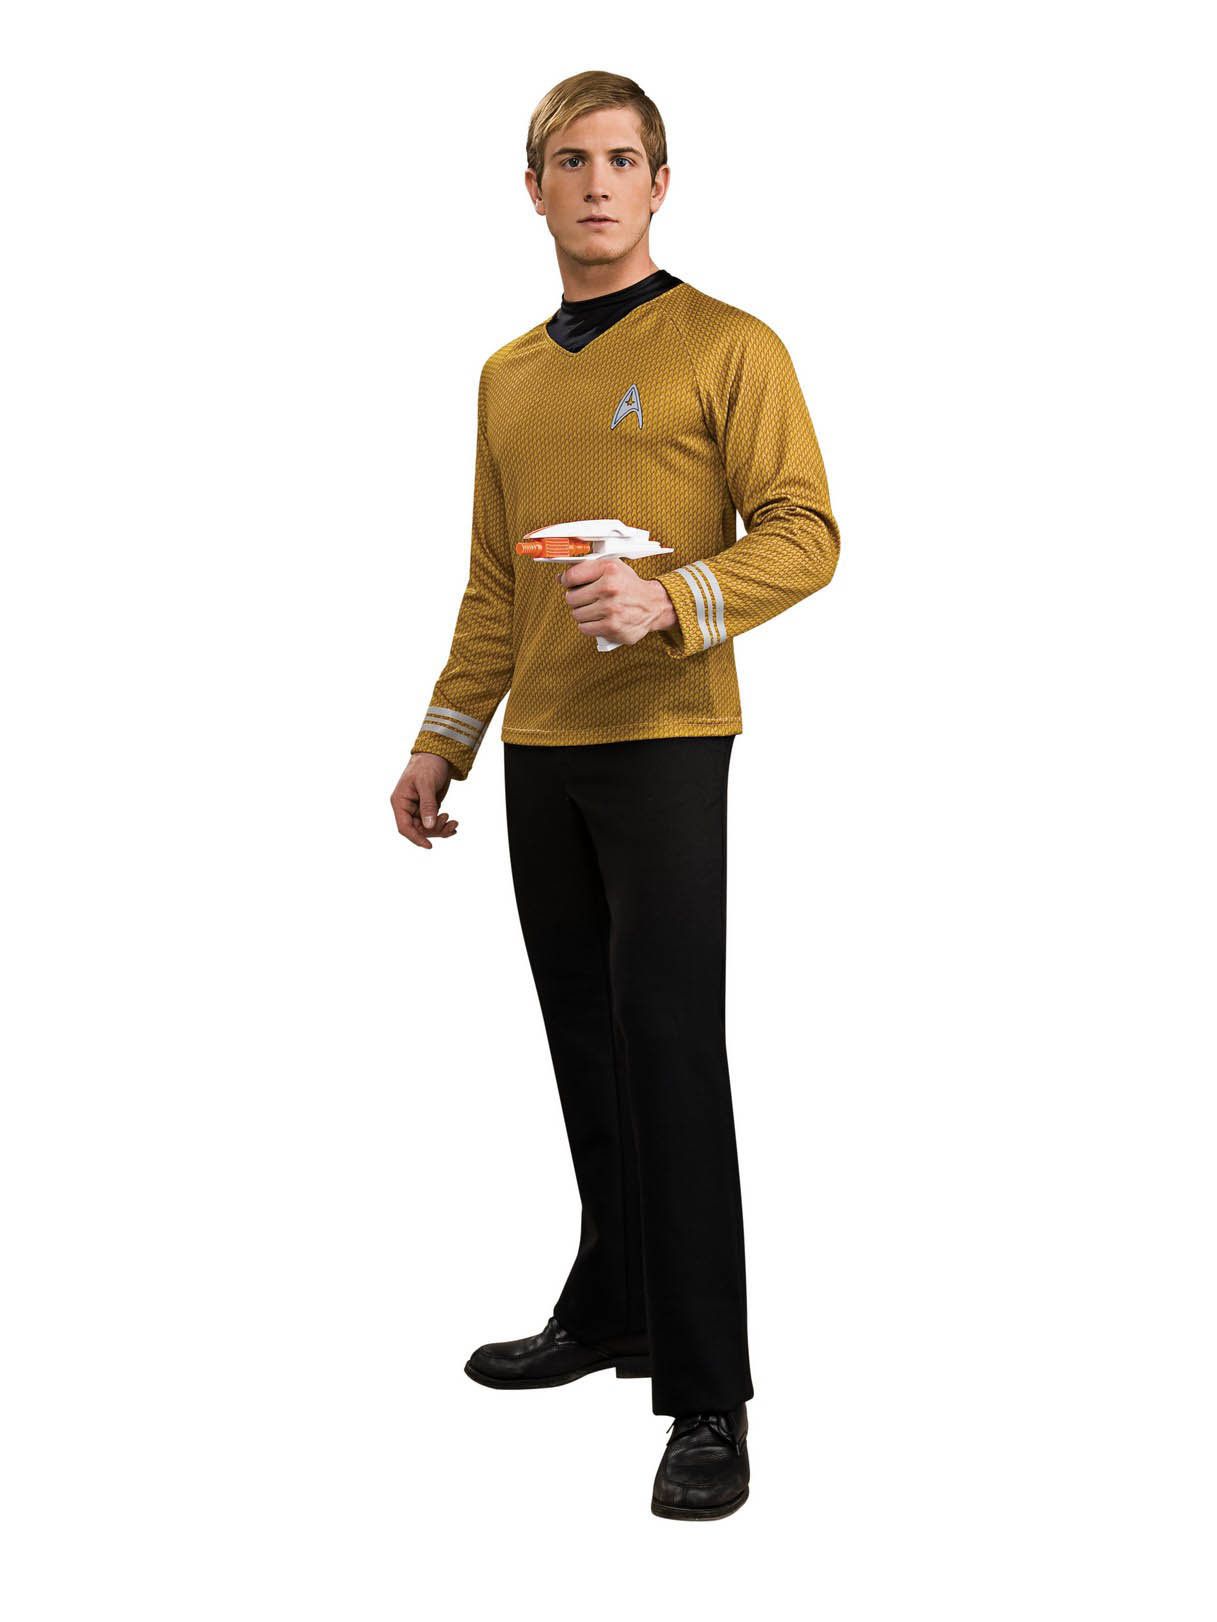 Adult Star Trek Captain Kirk Deluxe Costume - costumes.com